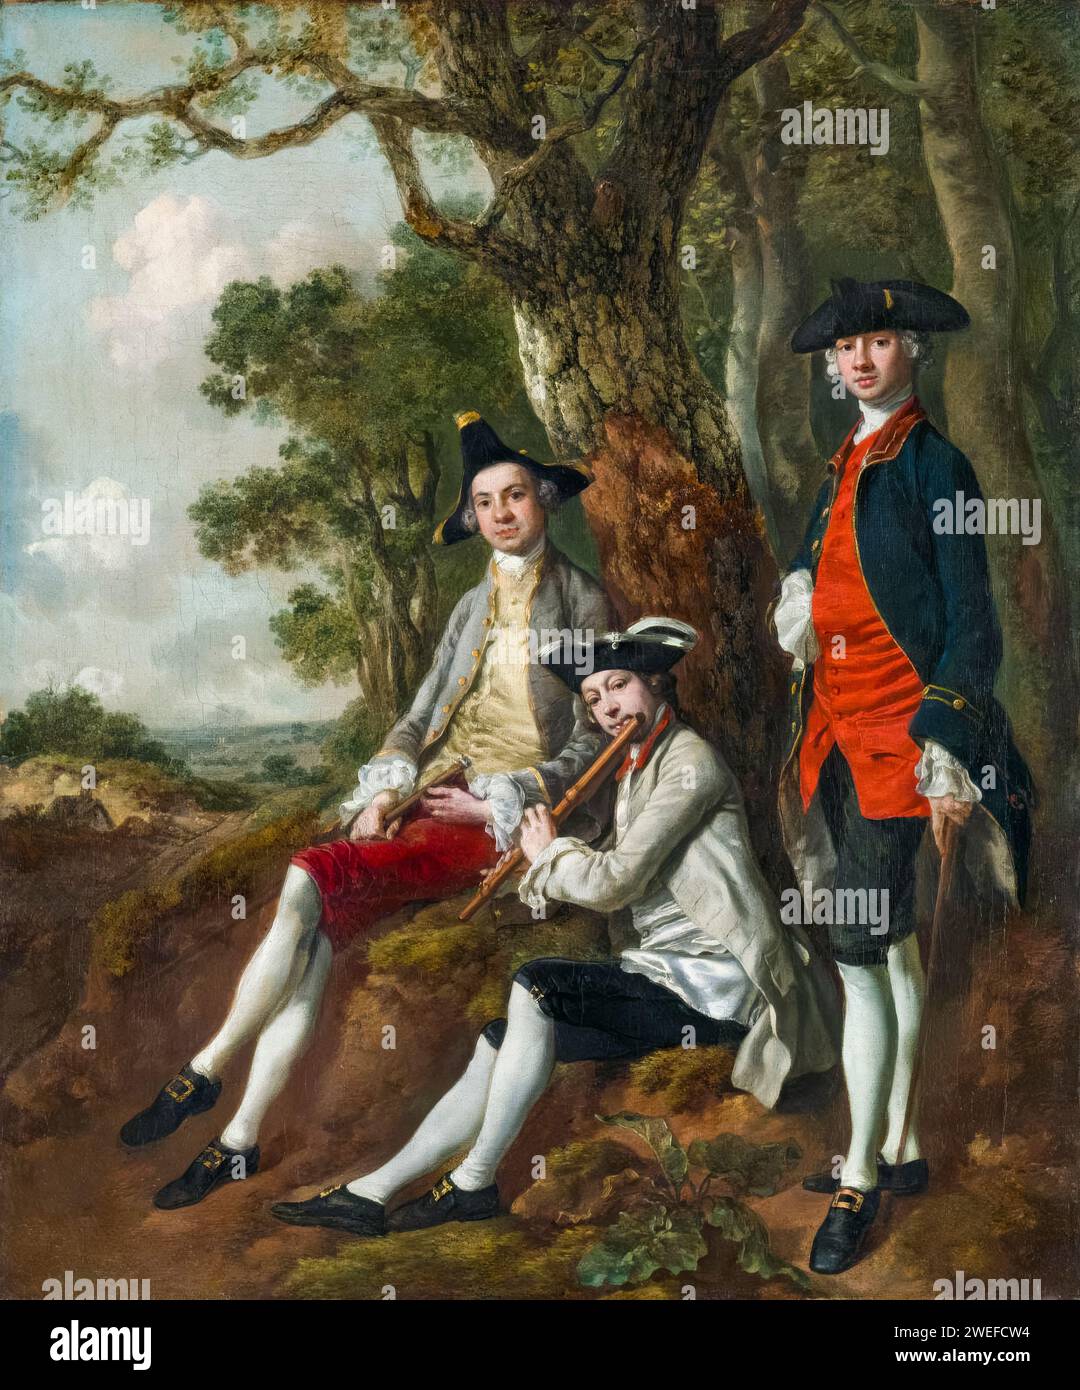 Thomas Gainsborough, Peter Darnell Muilman, Charles Crokatt et William Keable dans a Landscape, portrait à l'huile sur toile, vers 1750 Banque D'Images